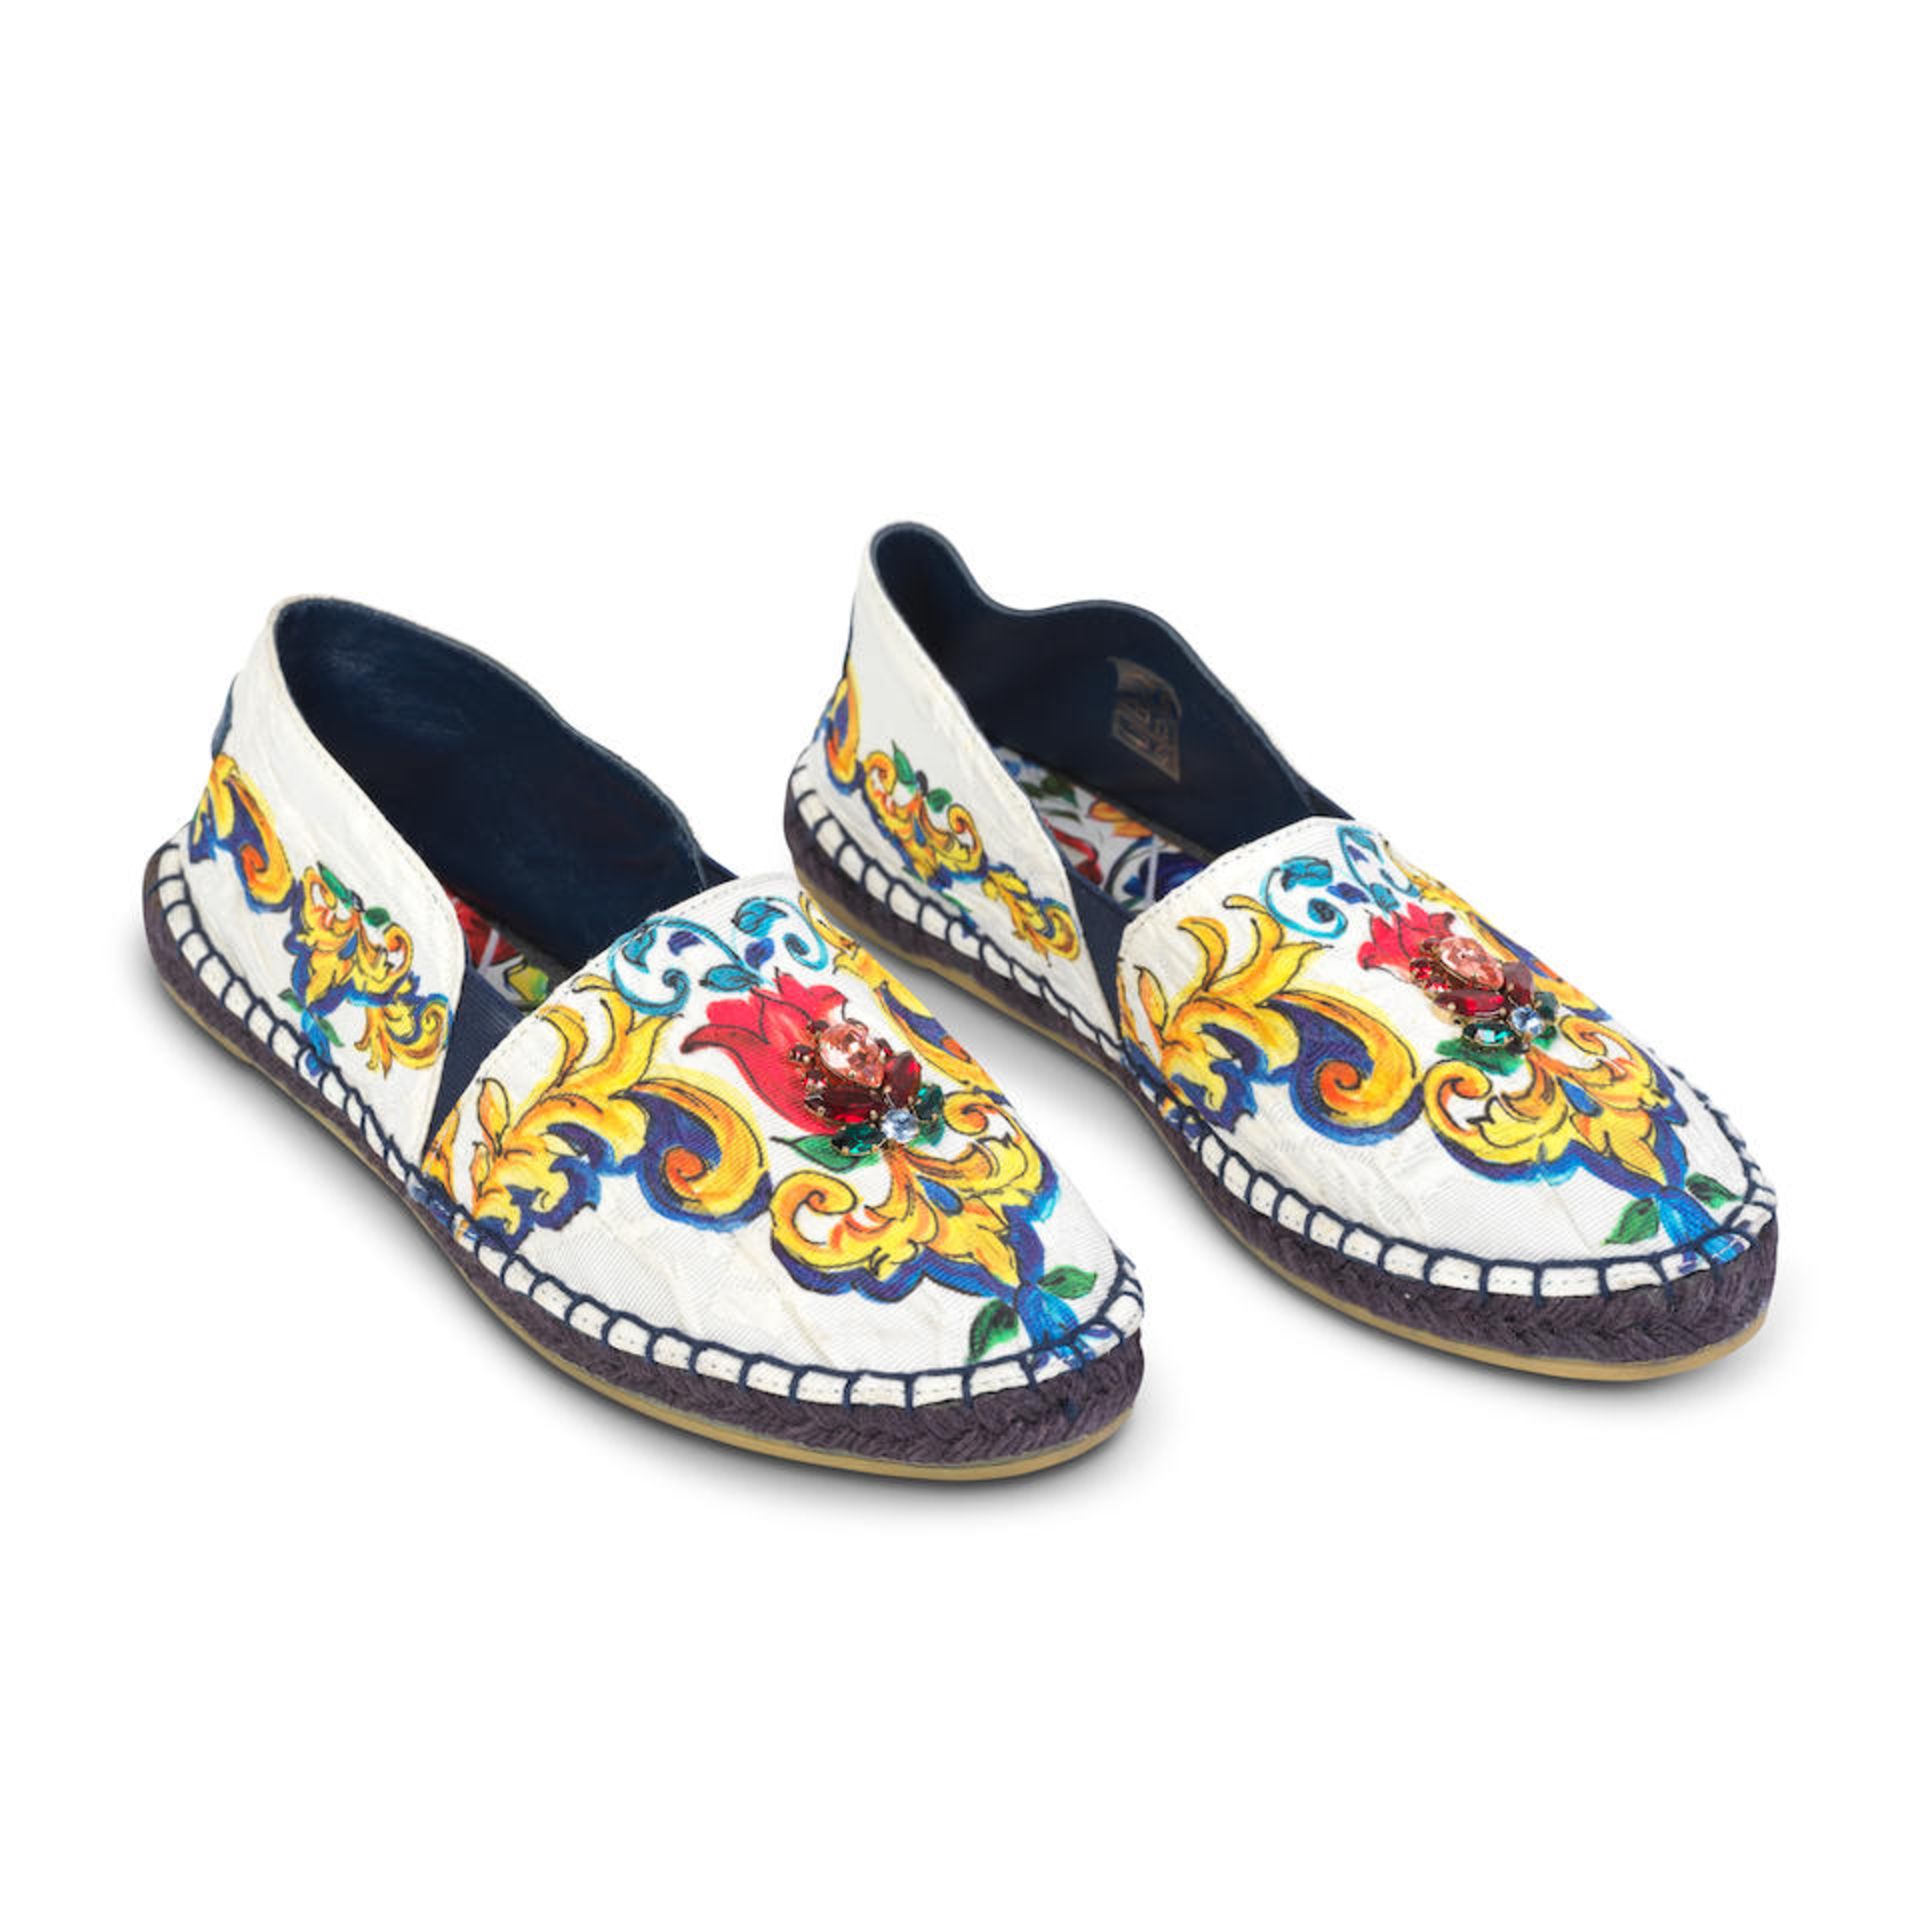 Dolce & Gabbana Bambino: a Pair of Multicolour Espadrilles